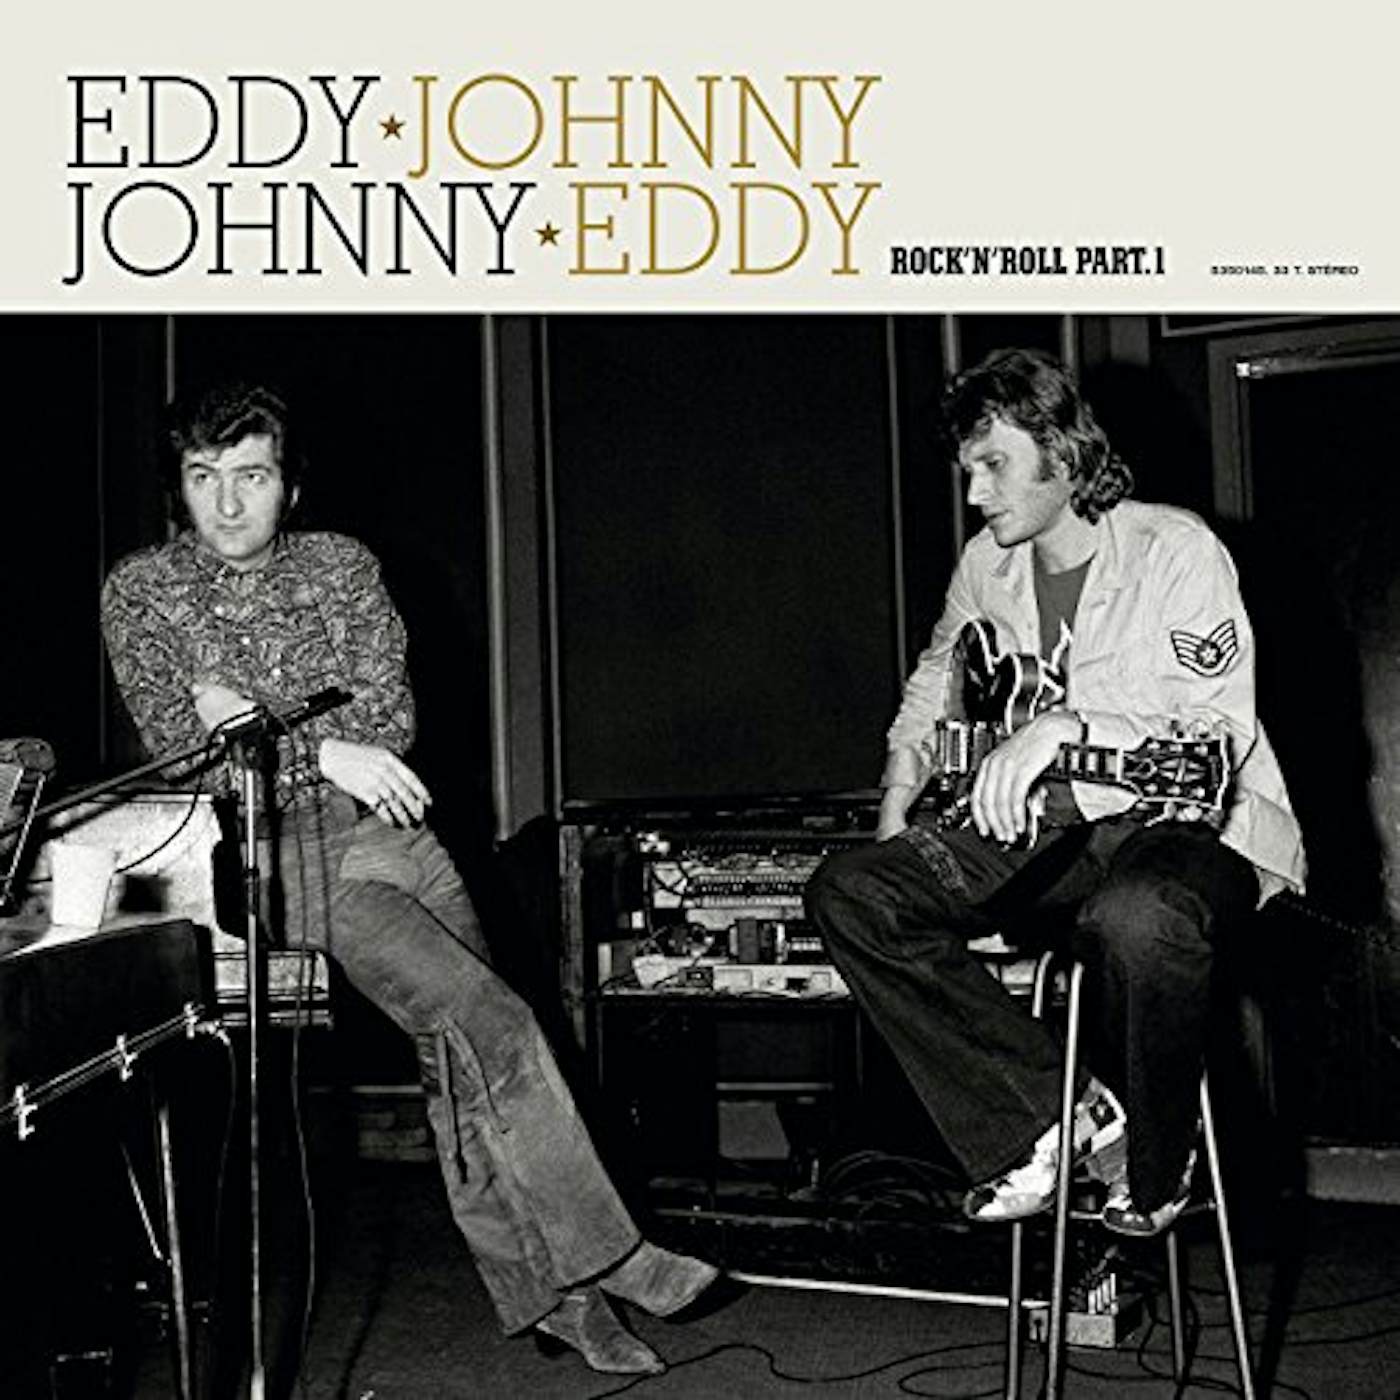 Rock à memphis picture-disc vinyl lp 33 tours de Johnny Hallyday